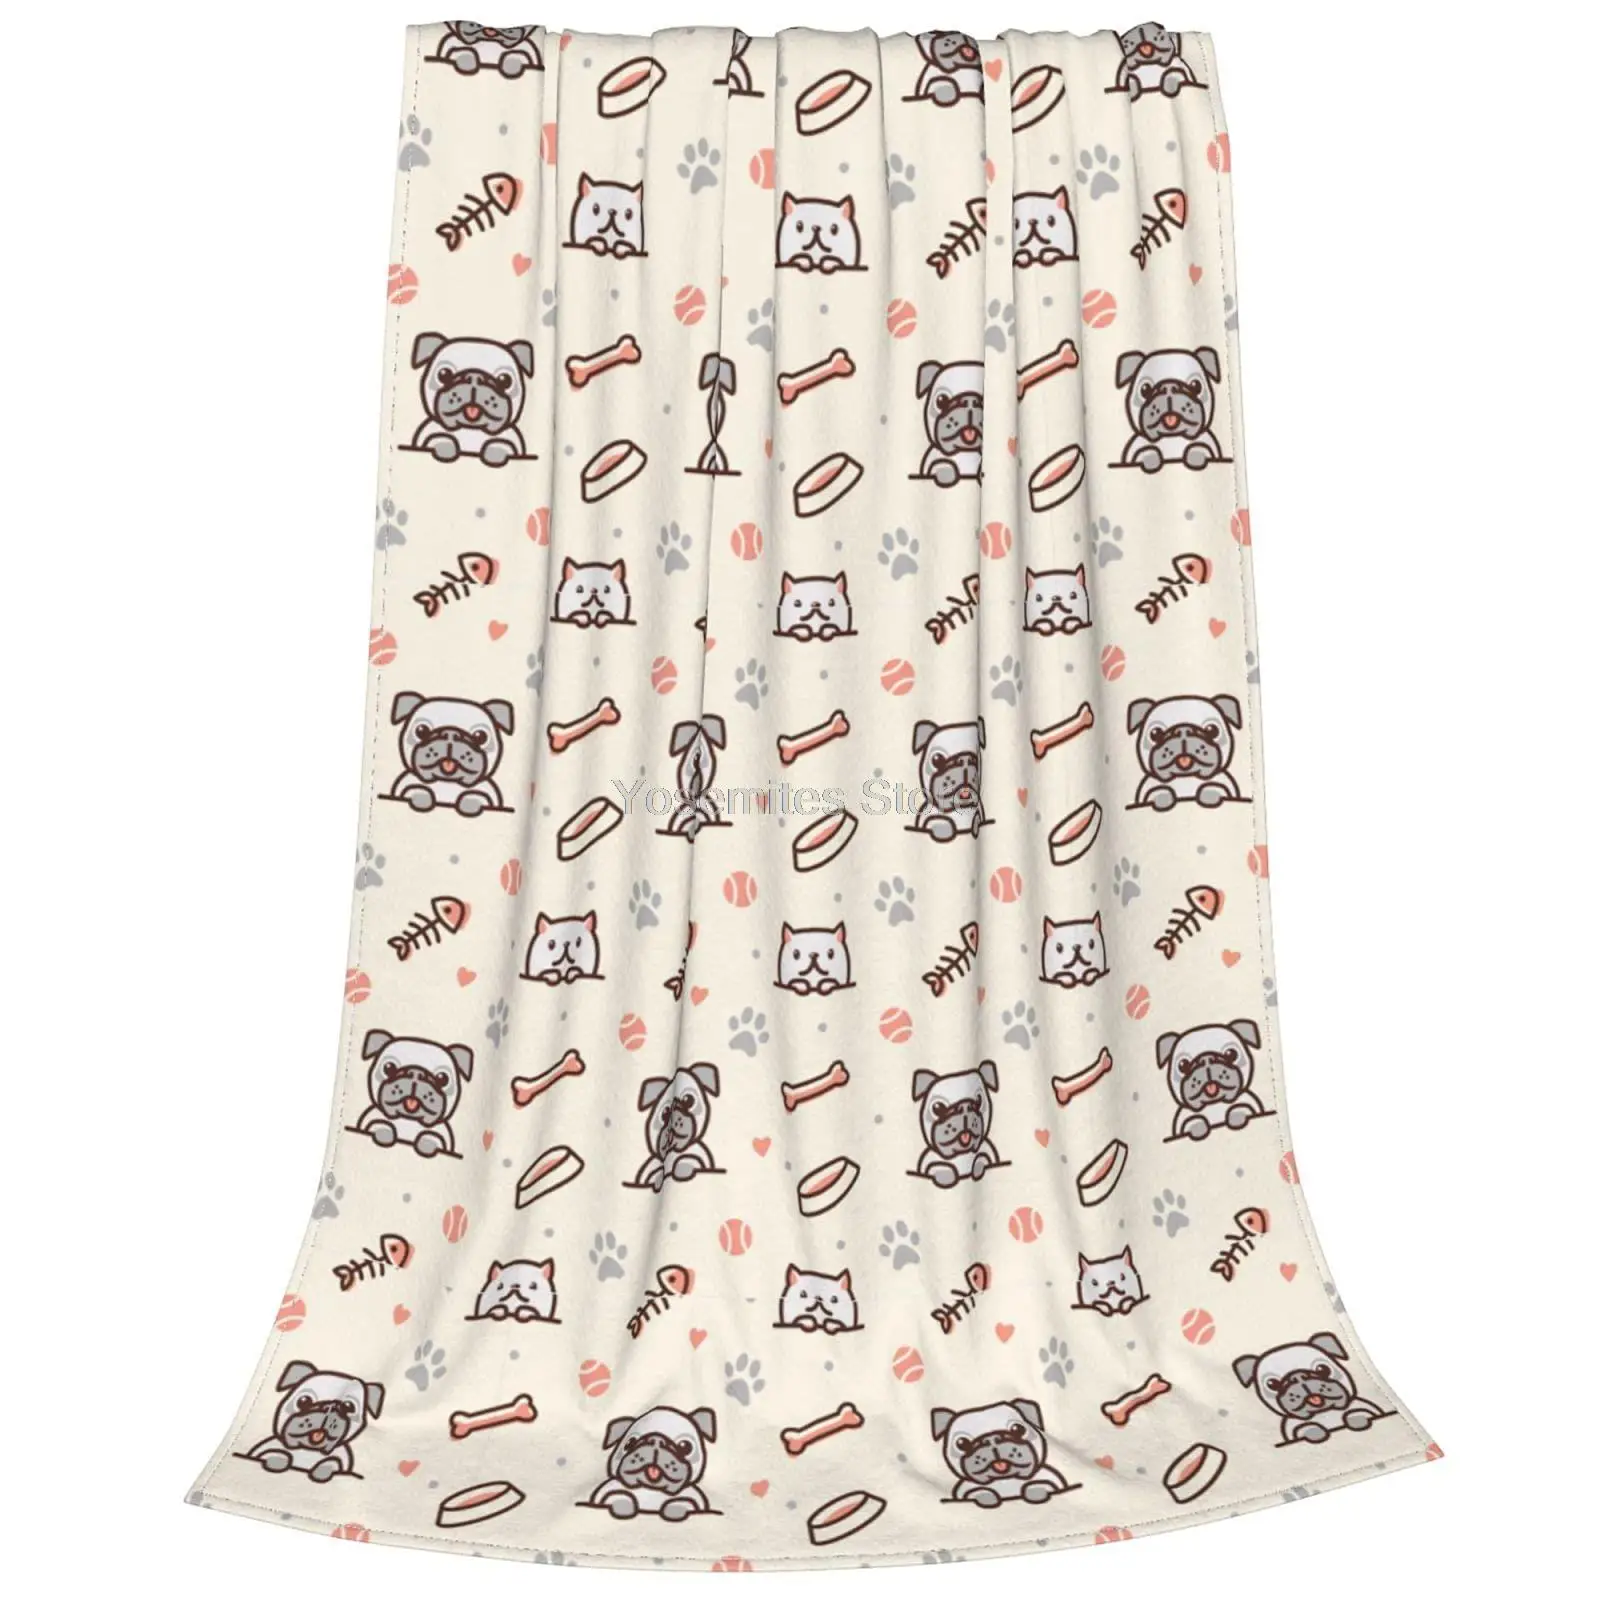 

Флисовое одеяло s, супермягкое Фланелевое удобное легкое пушистое одеяло, теплое плюшевое одеяло размера s для всех сезонов